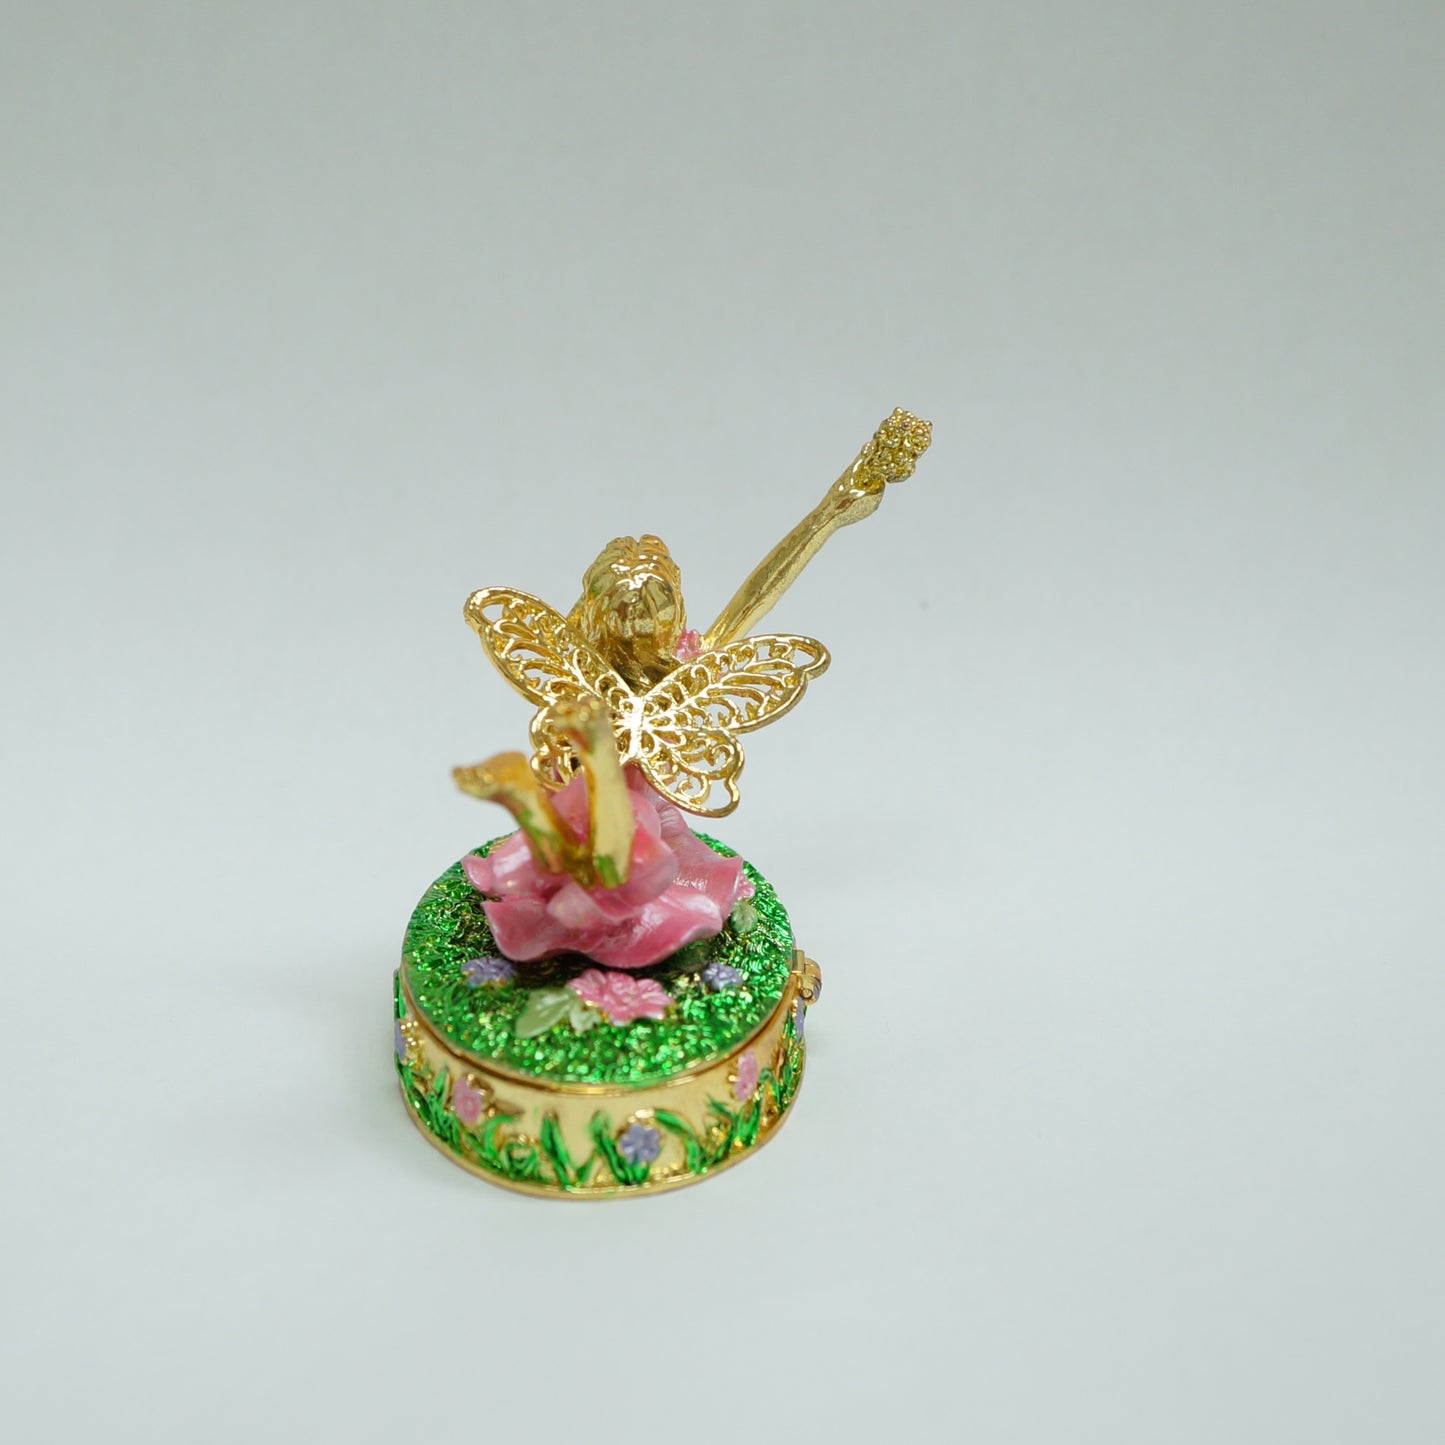 Cristiani Collezione Flying Fairy Trinket Box.